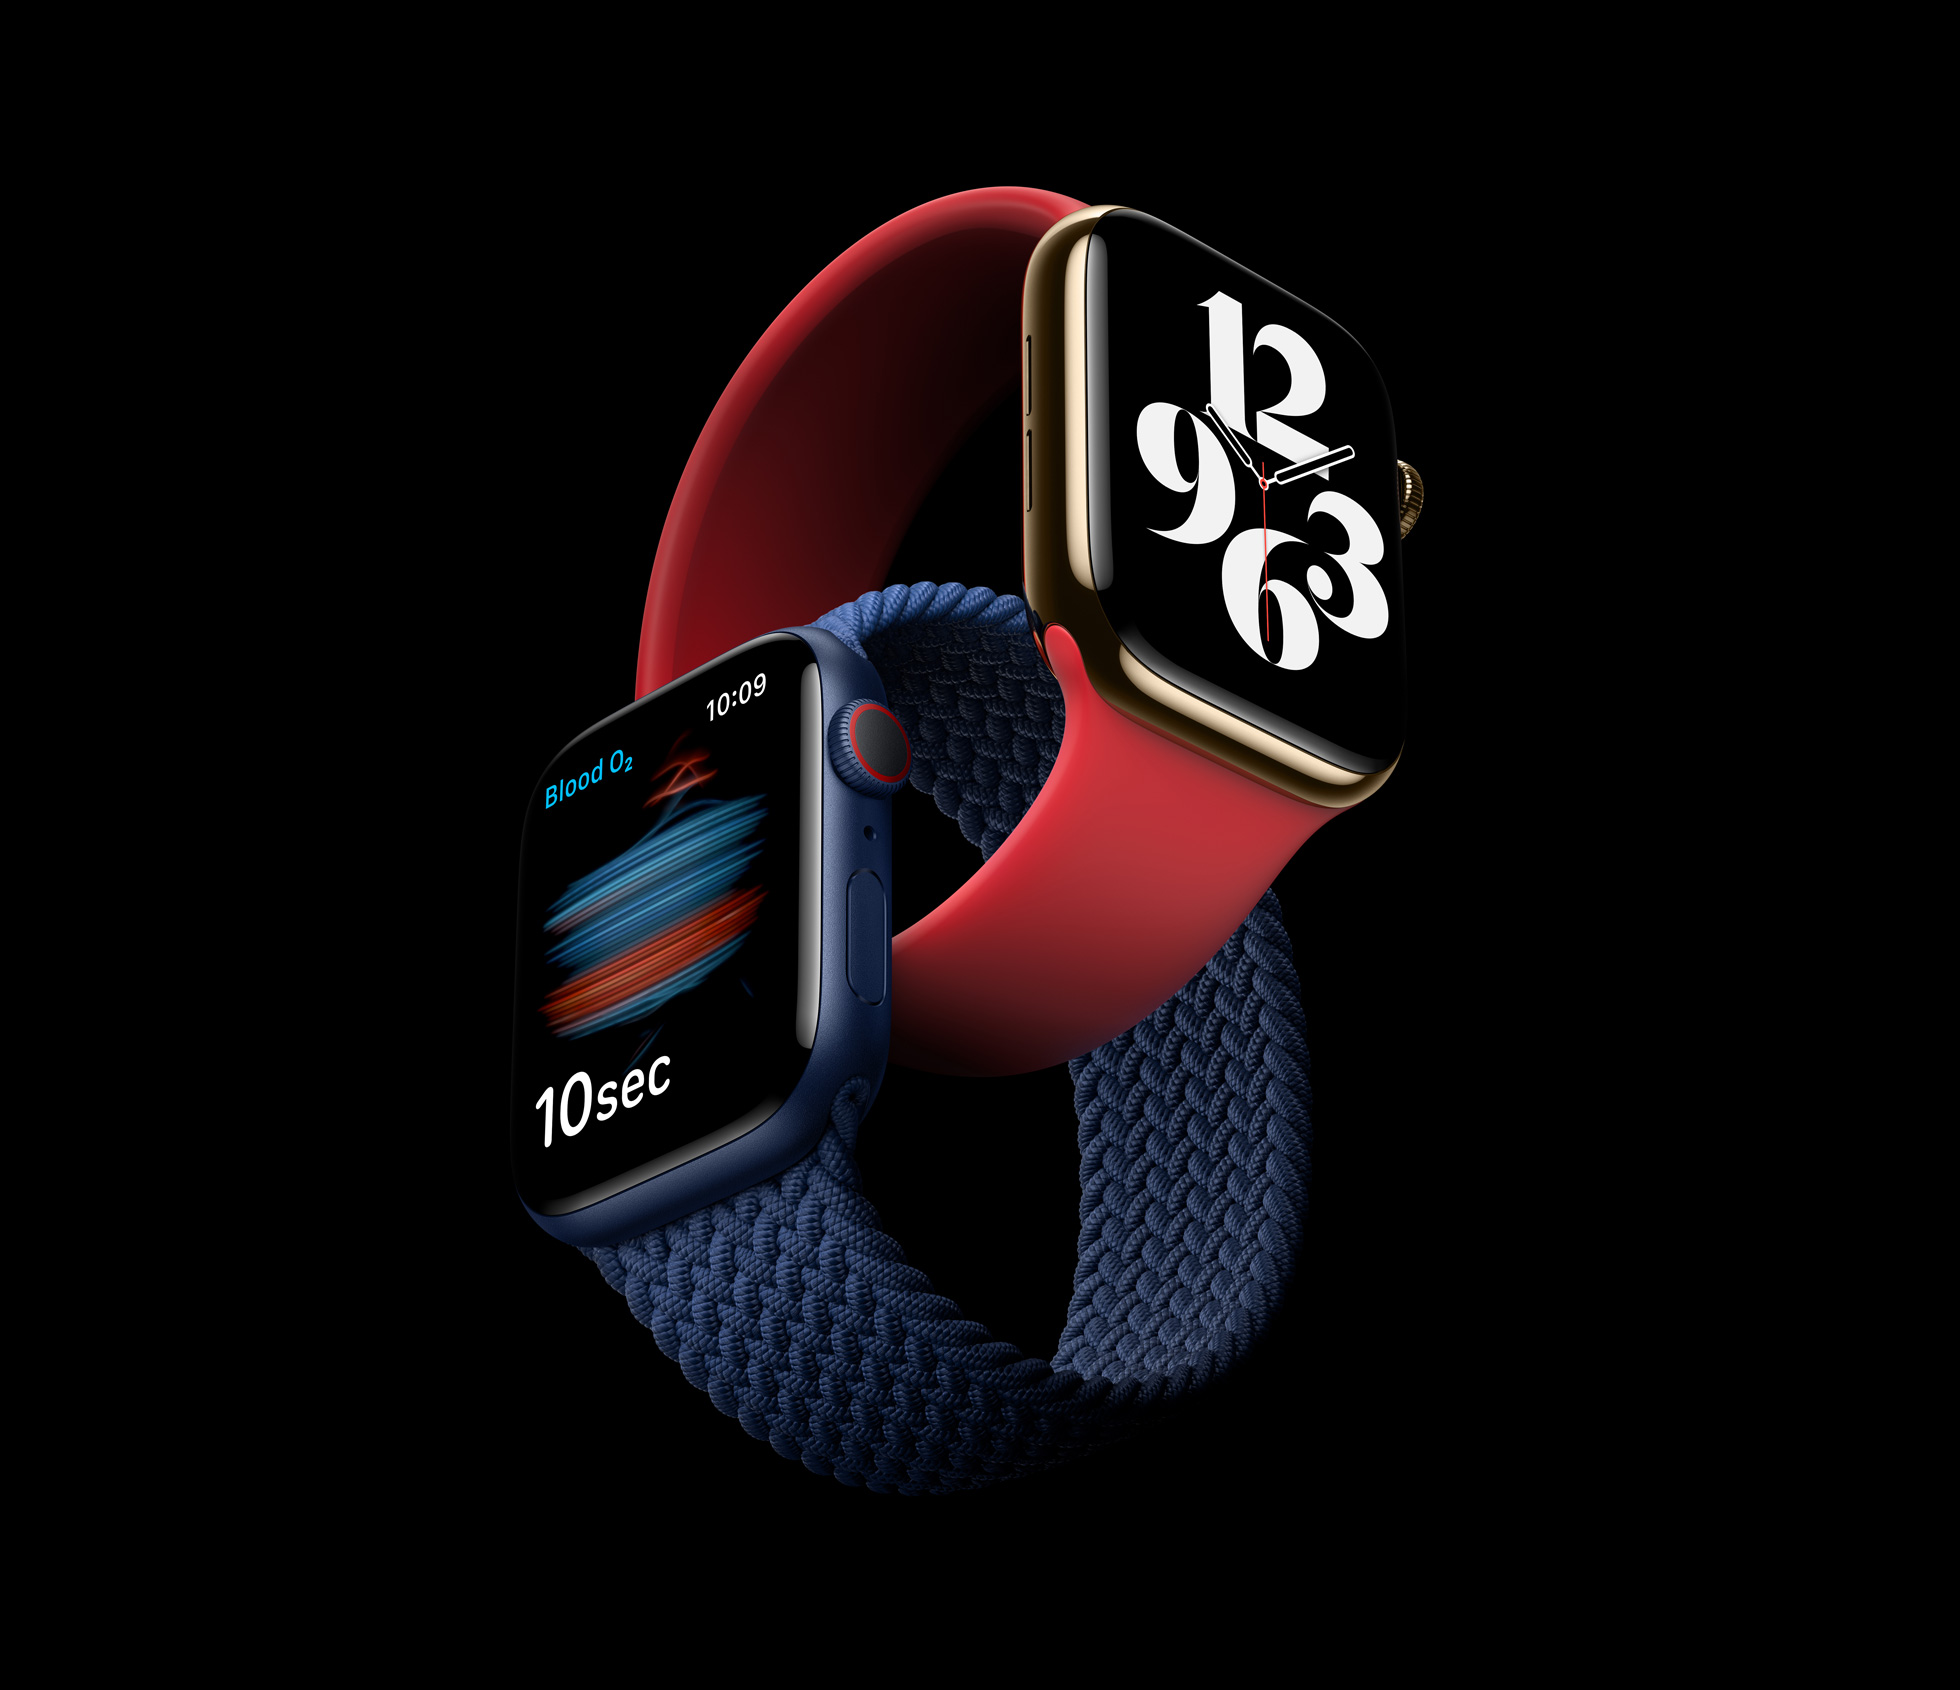 Descubra as funcionalidades avançadas do Apple Watch Series 6 e obtenha informações sobre o custo de conserto mencionado no texto.